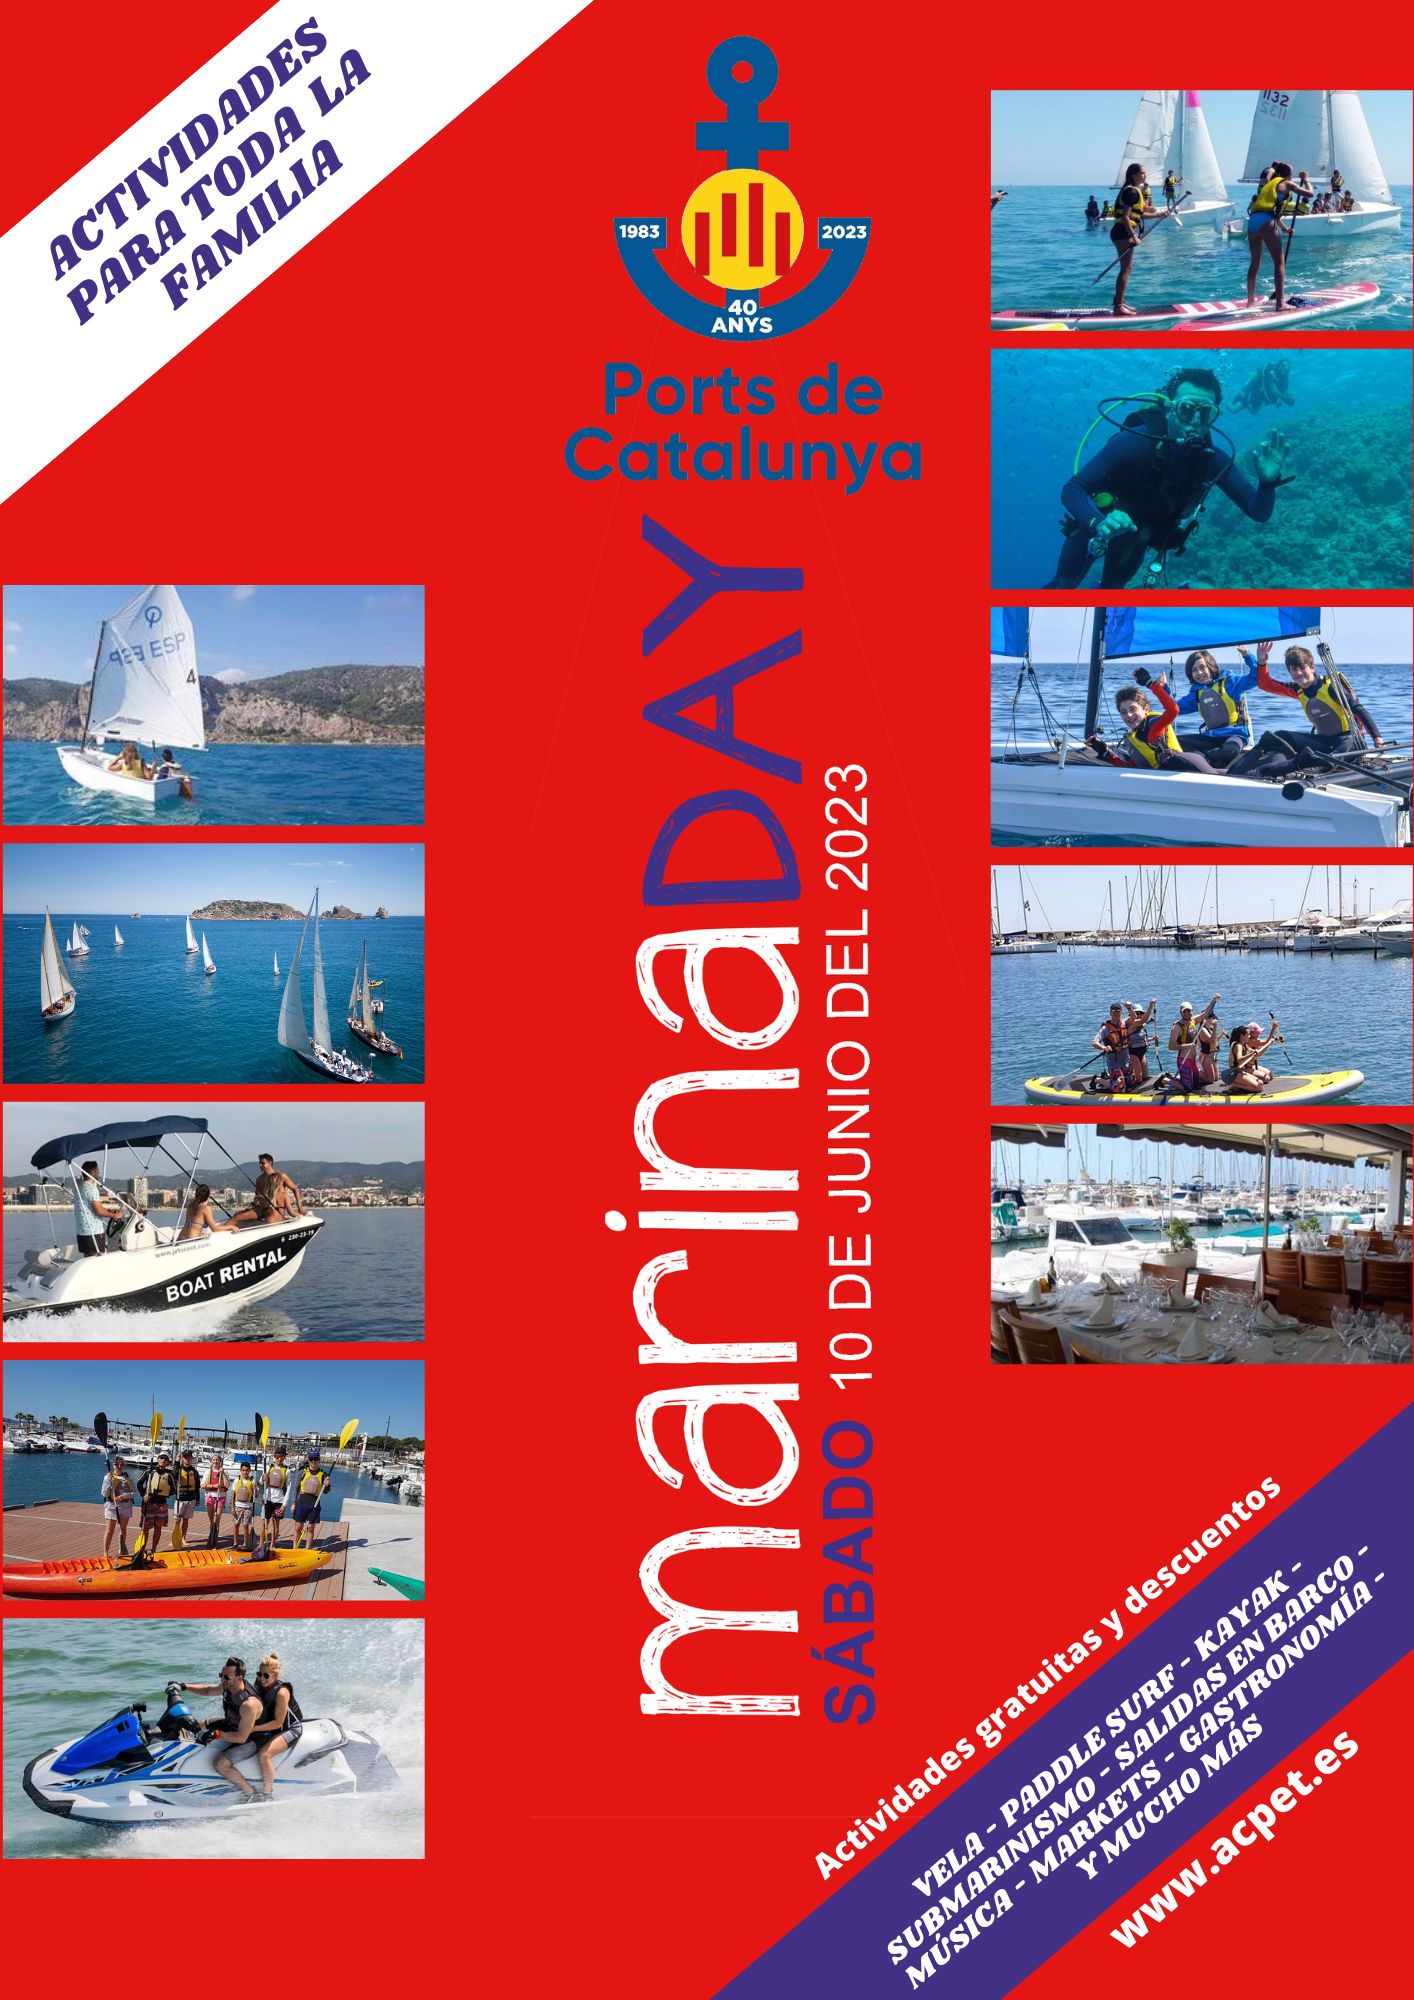 Marina Day, sábado día 10 la jornada más festiva del Port de Sitges